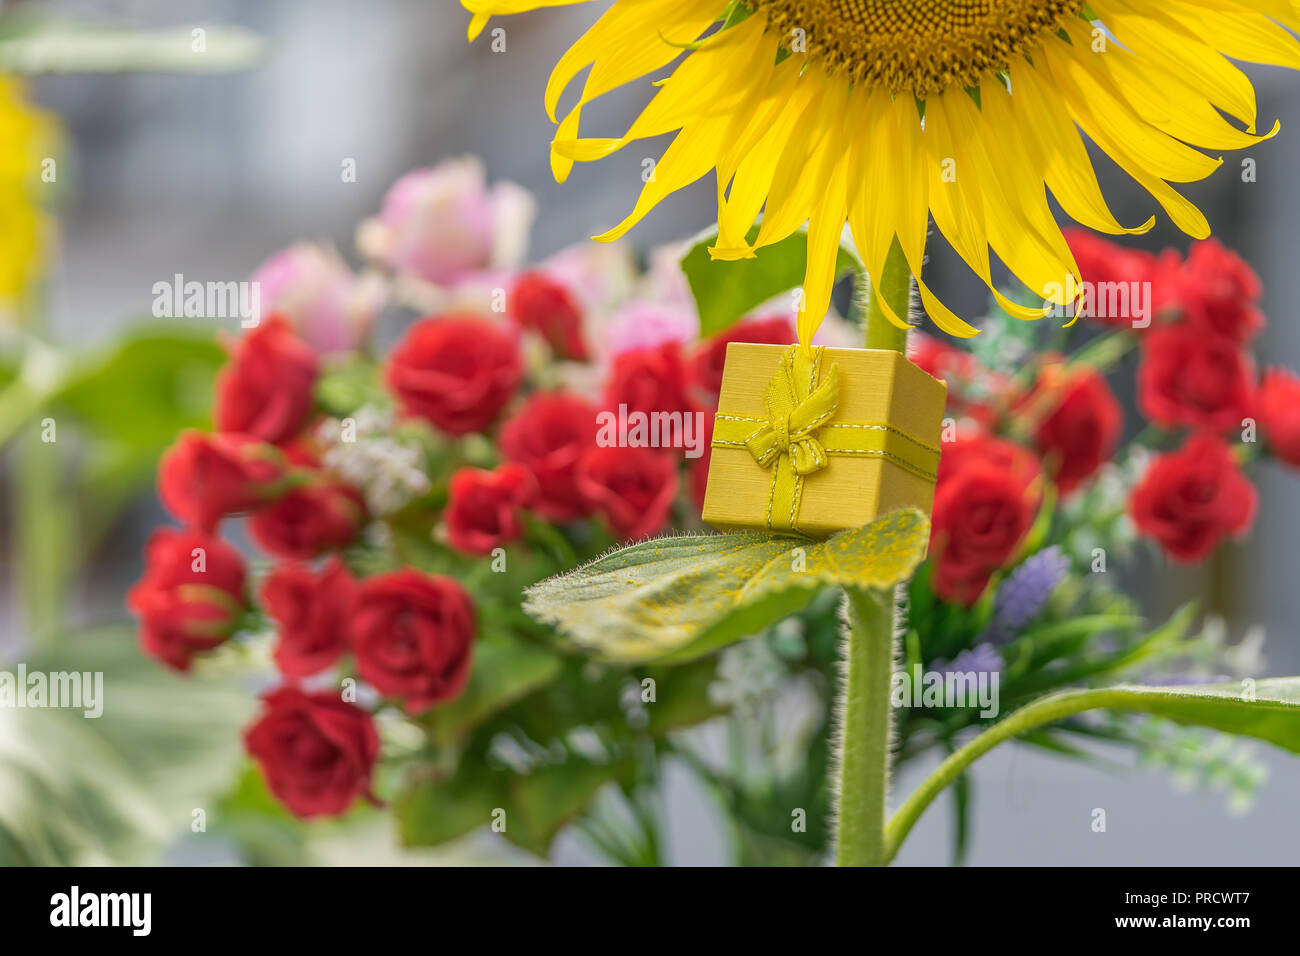 Eine Sonnenblume mit einem goldenen Geschenk, konzeptuelles Bild. Stockfoto